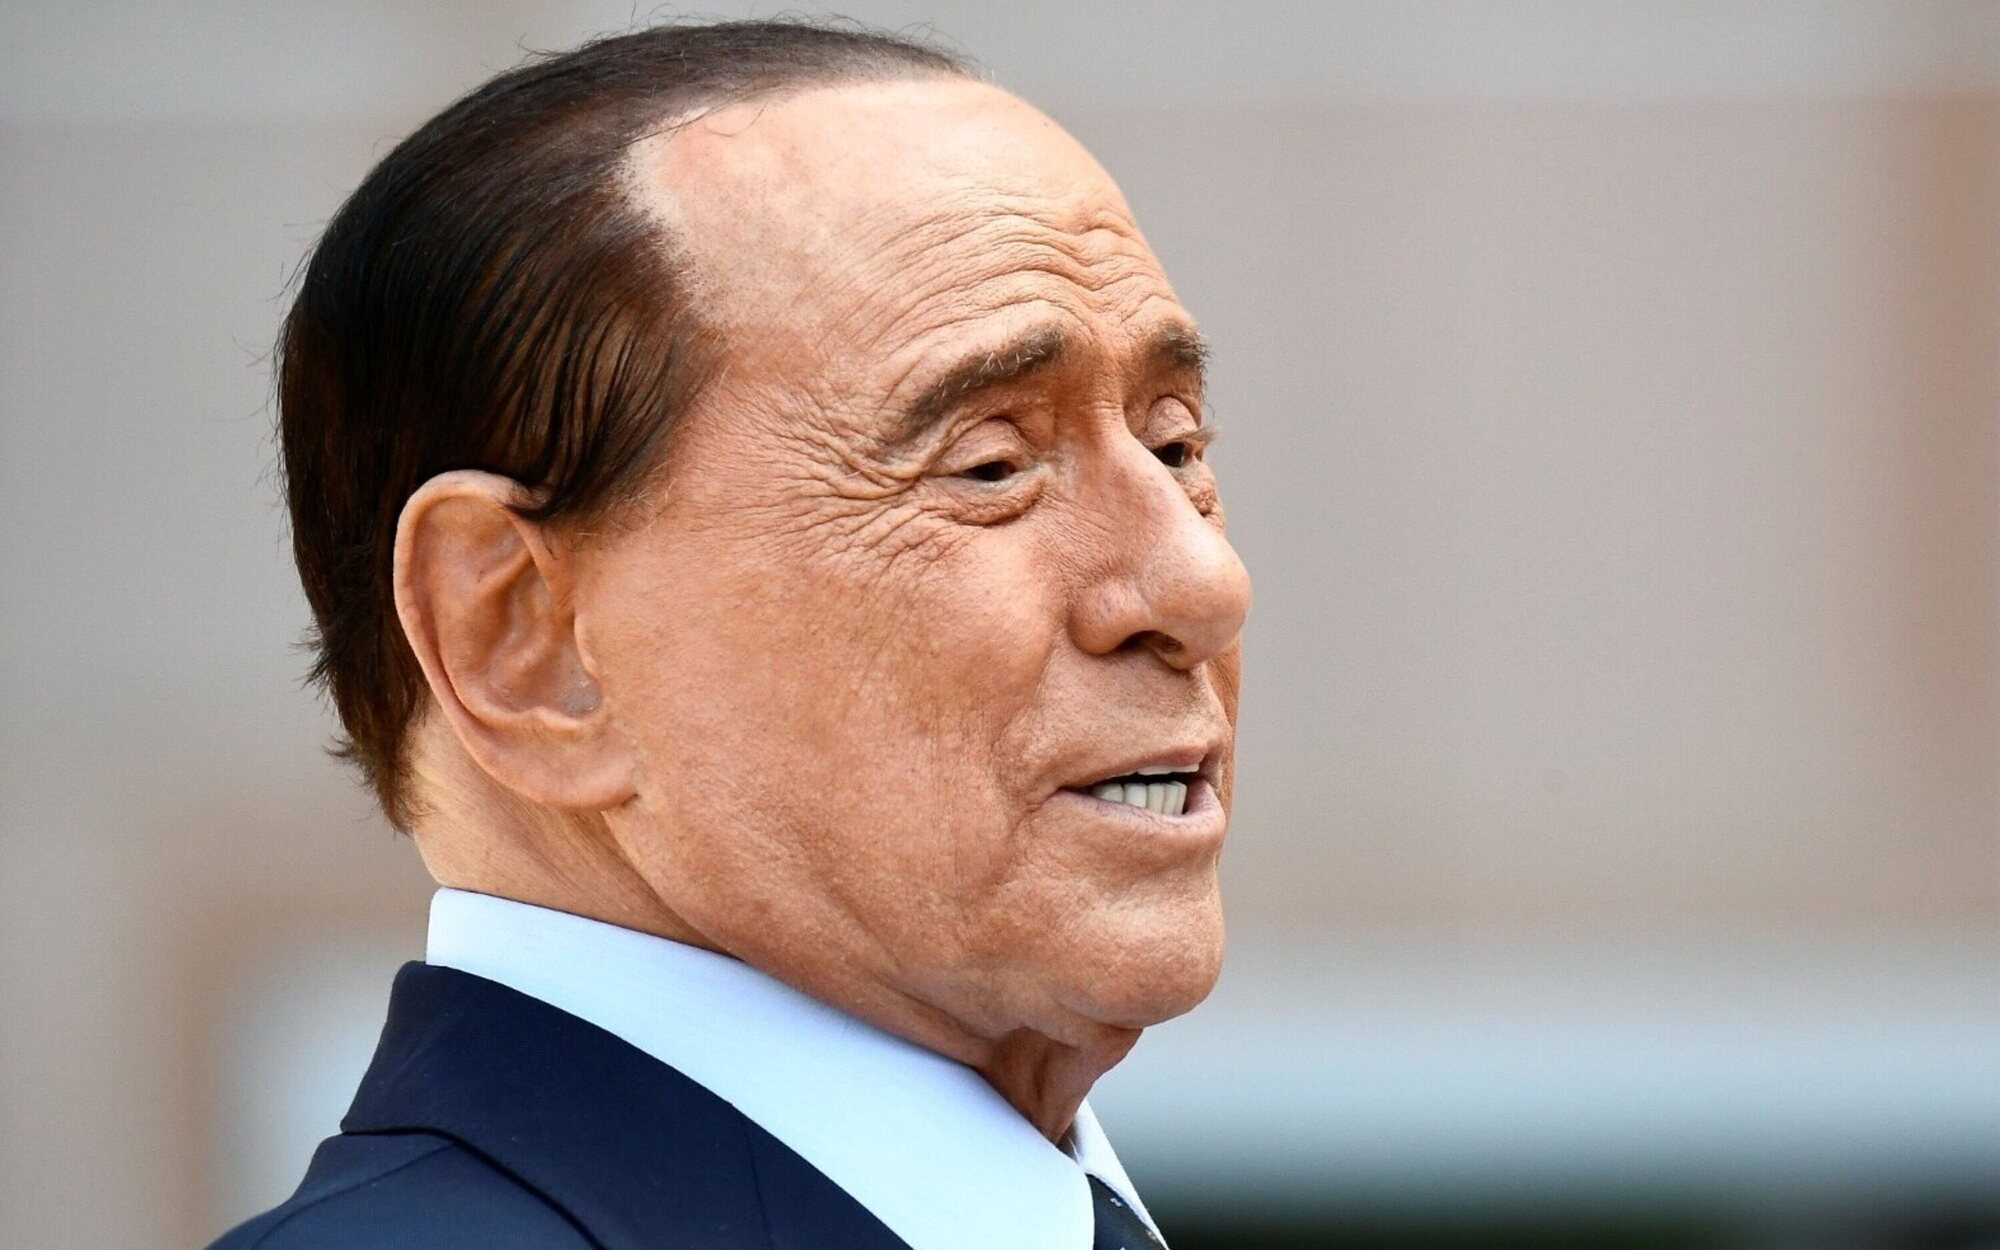 Muere Silvio Berlusconi, fundador de Mediaset, a los 86 años